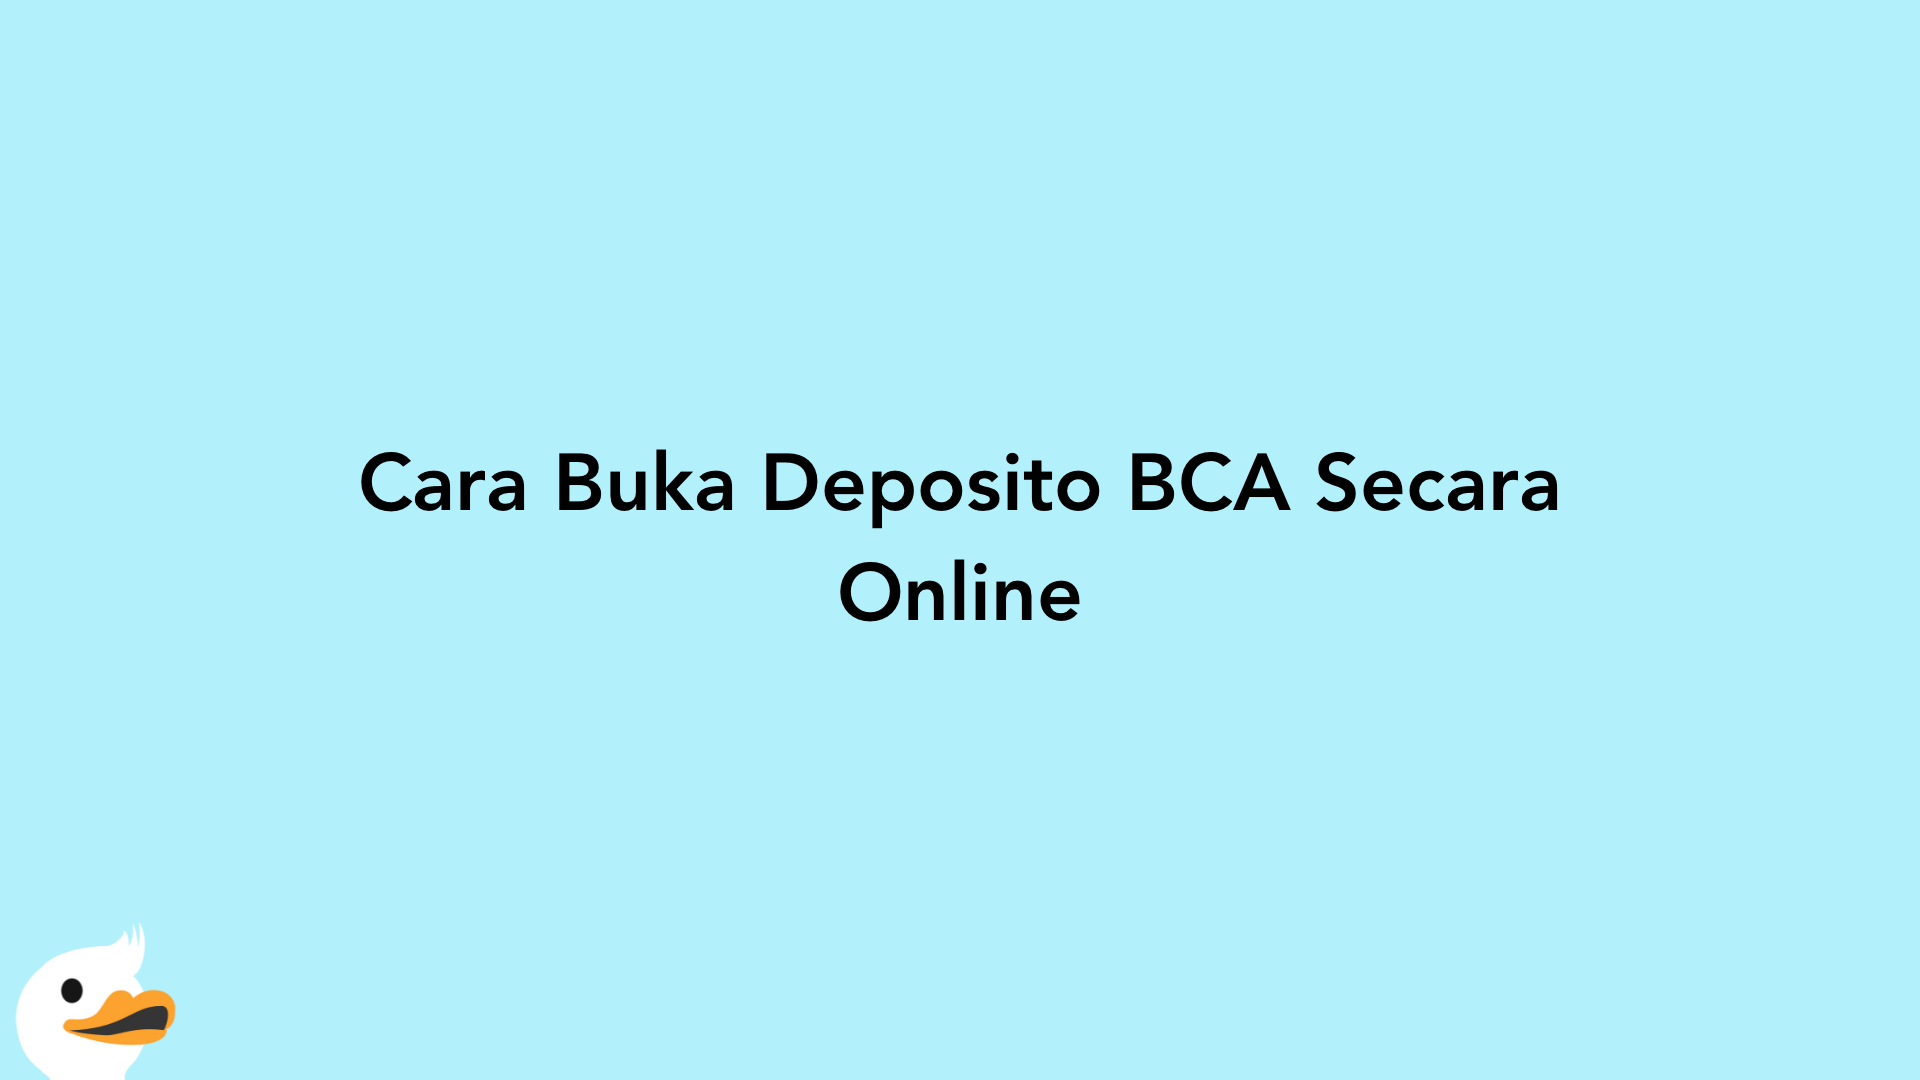 Cara Buka Deposito BCA Secara Online